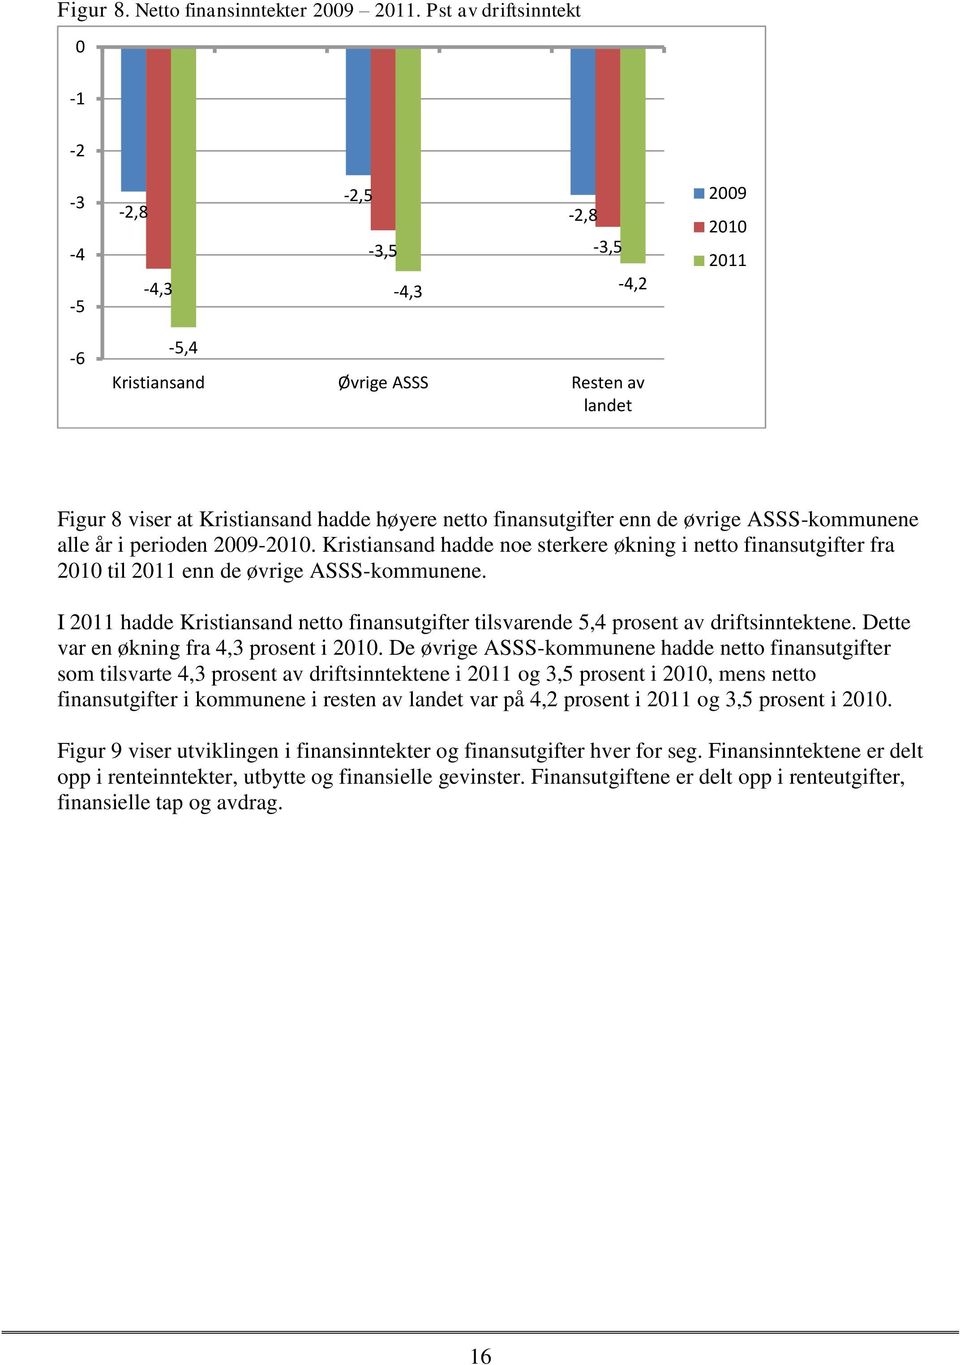 de øvrige ASSS-kommunene alle år i perioden 2009-2010. Kristiansand hadde noe sterkere økning i netto finansutgifter fra 2010 til 2011 enn de øvrige ASSS-kommunene.